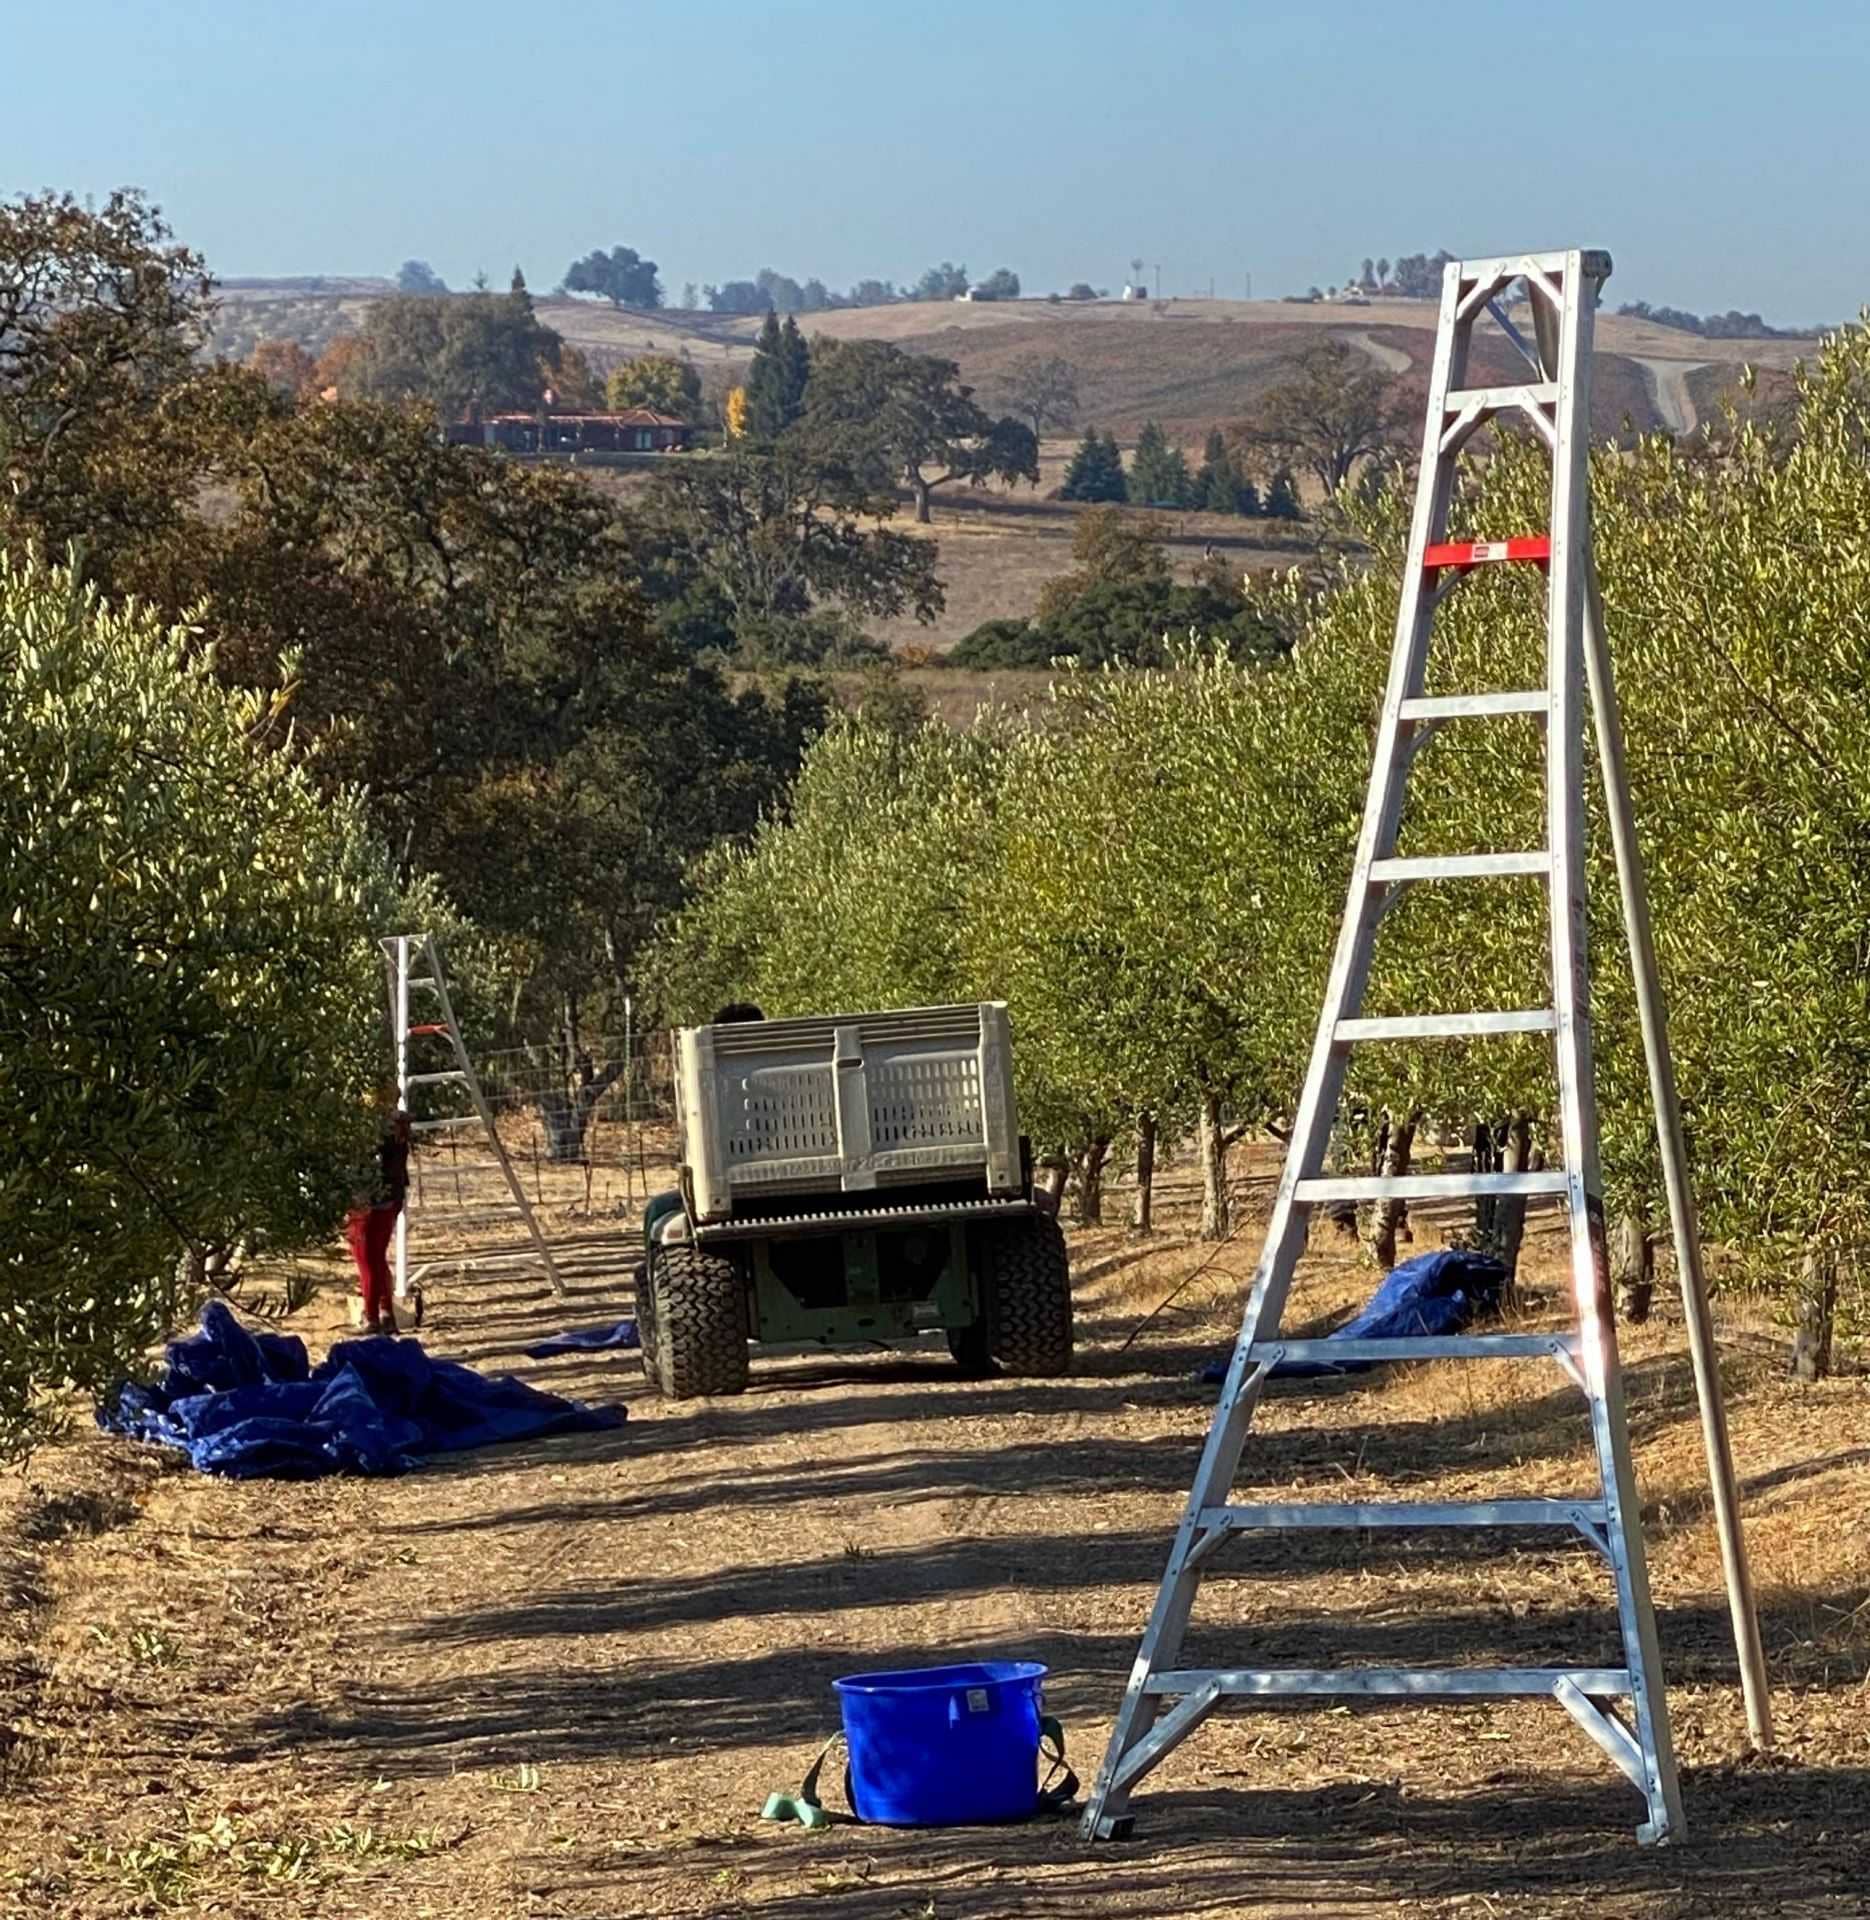 Конкурсы лучших оливковых масел в Северной Америке, треть лучших американских оливковых масел, происходящих из этого региона Калифорнии